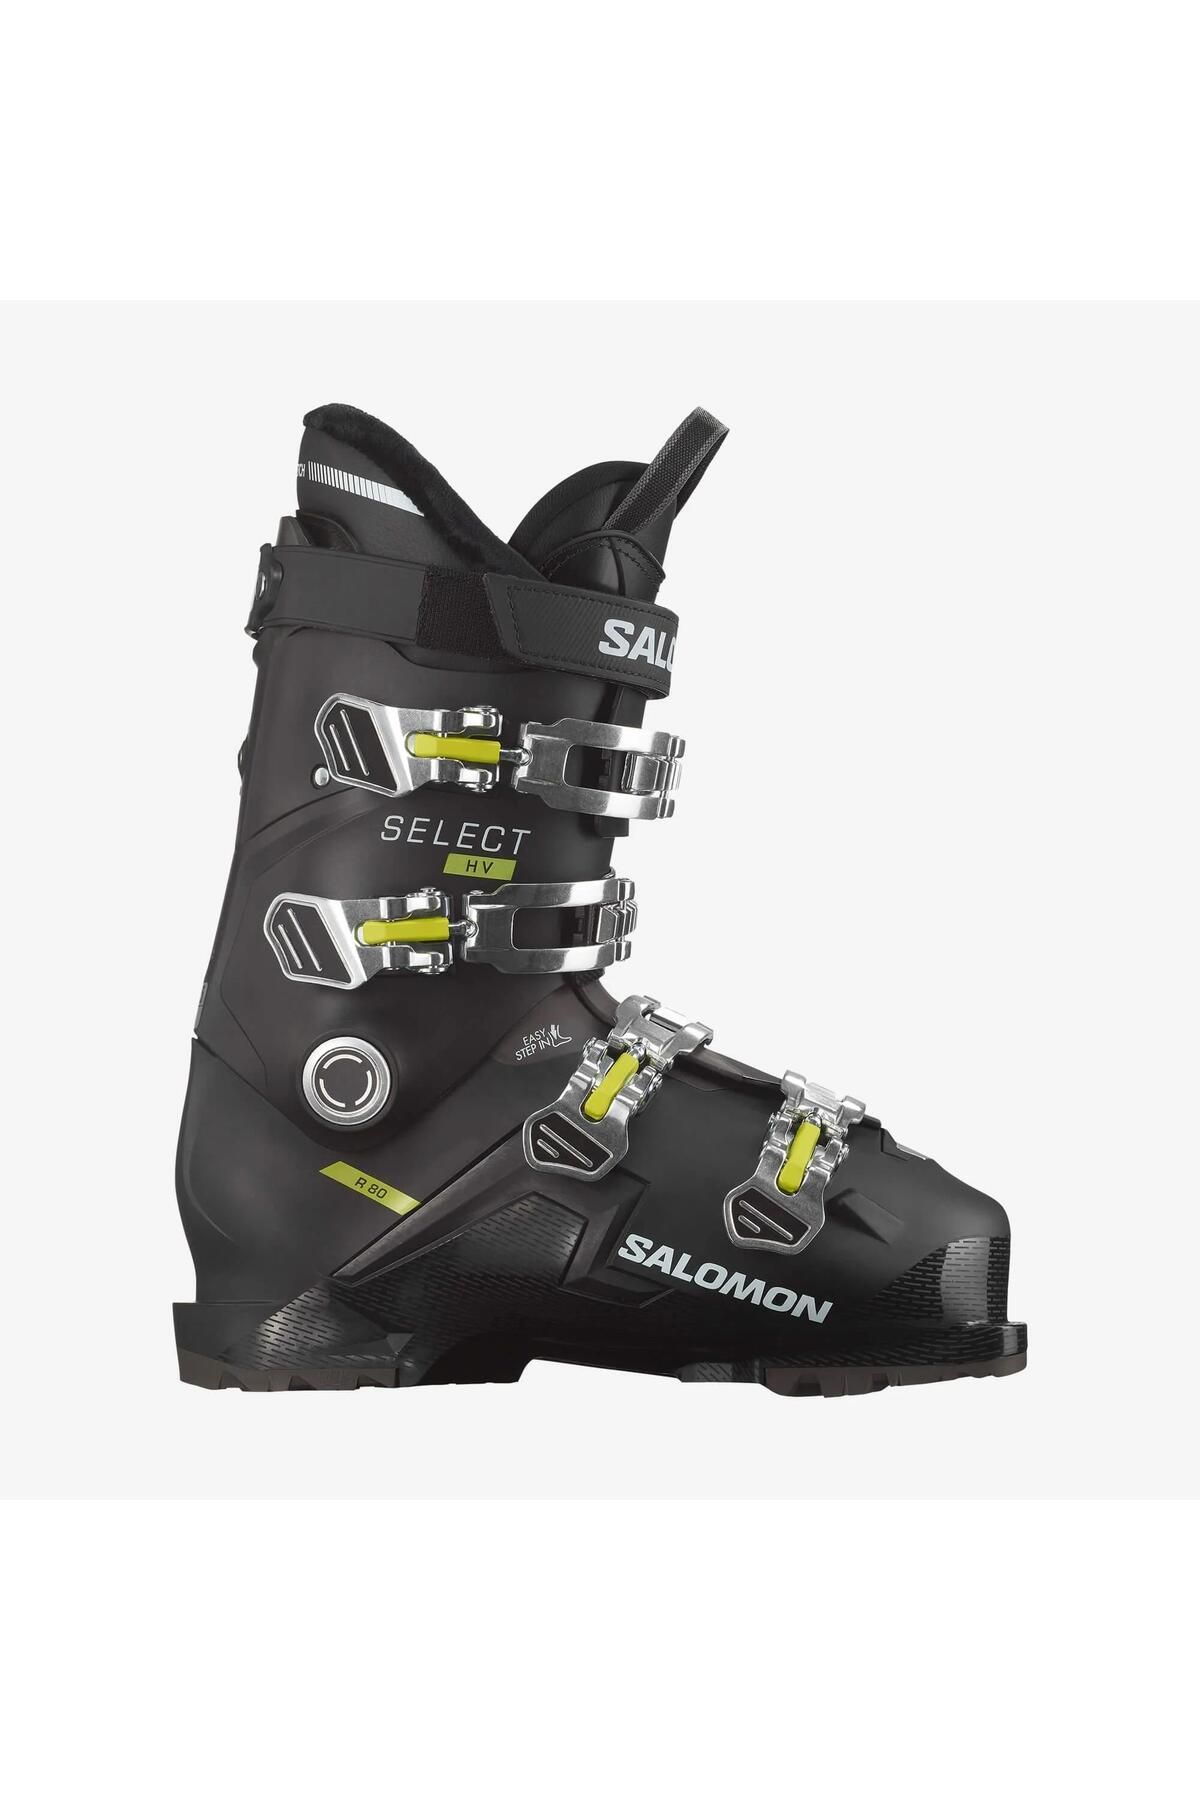 Salomon Select Hv R80 Erkek Kayak Ayakkabısı-l47357500219